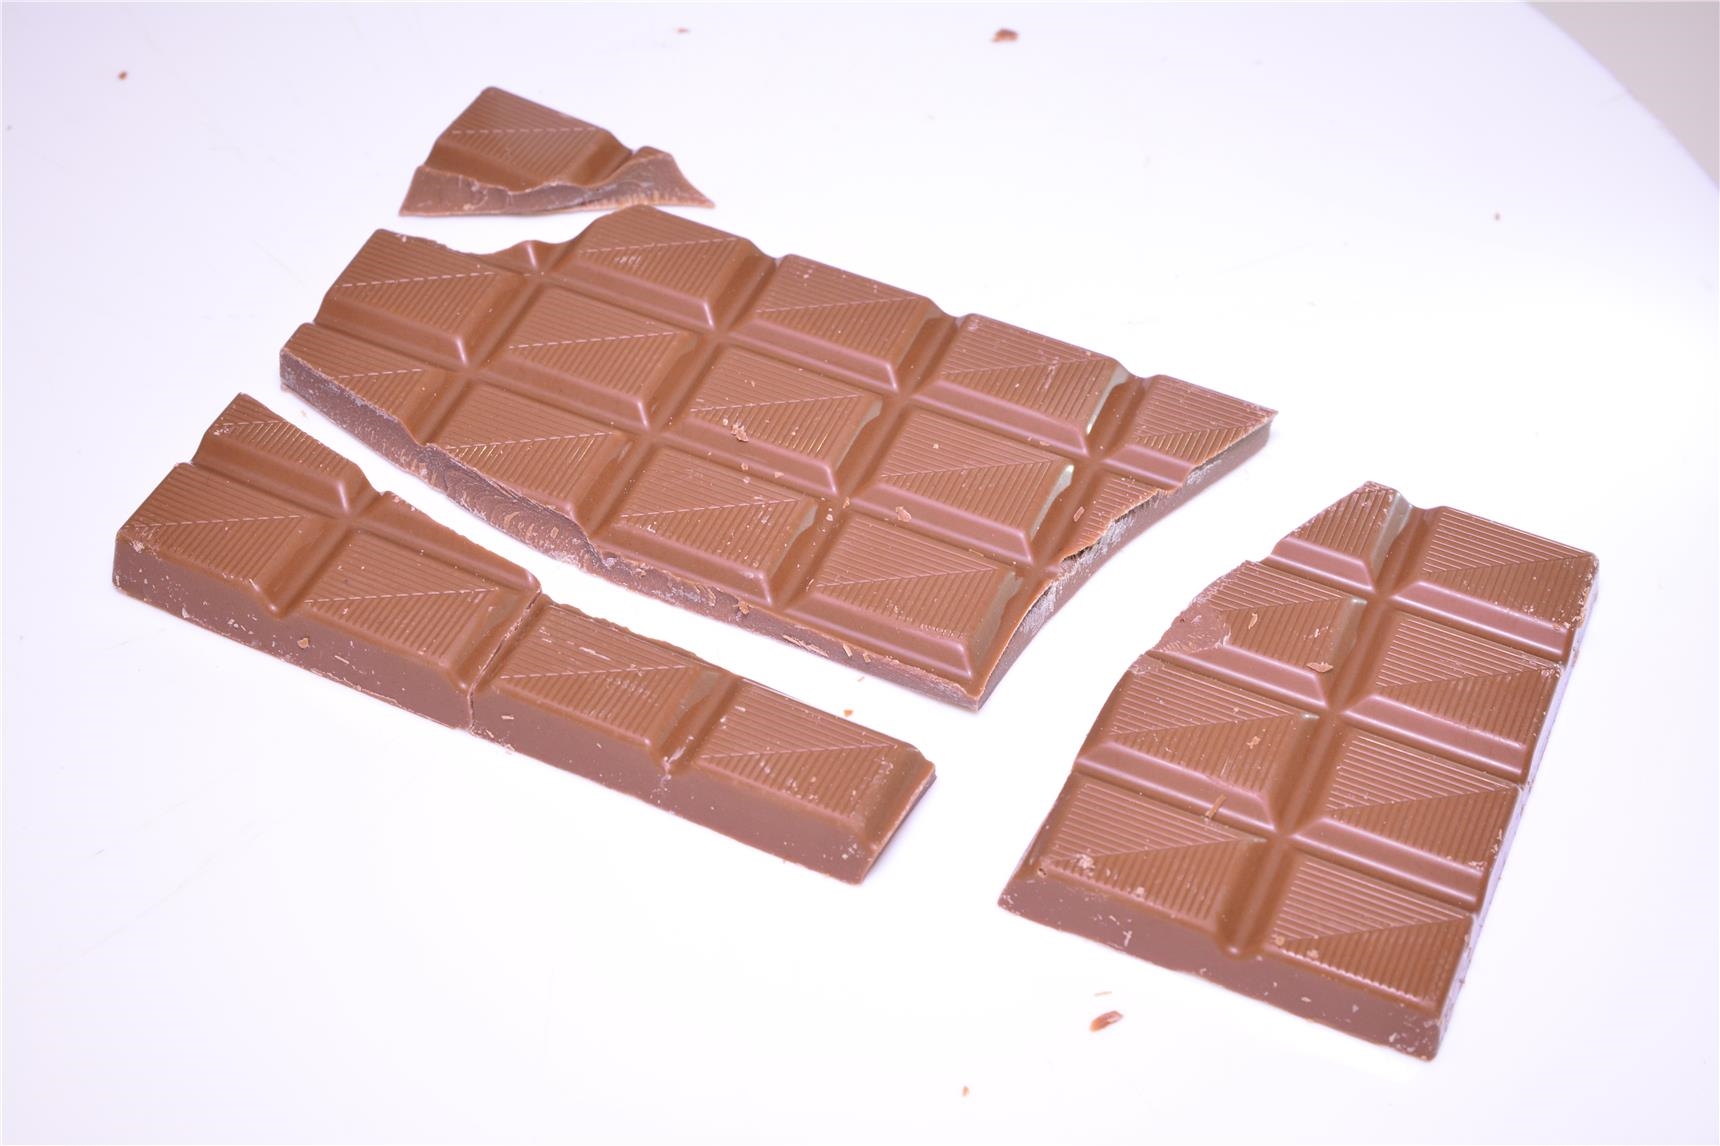 zerbrochene Schokolade (Moritz Bross)